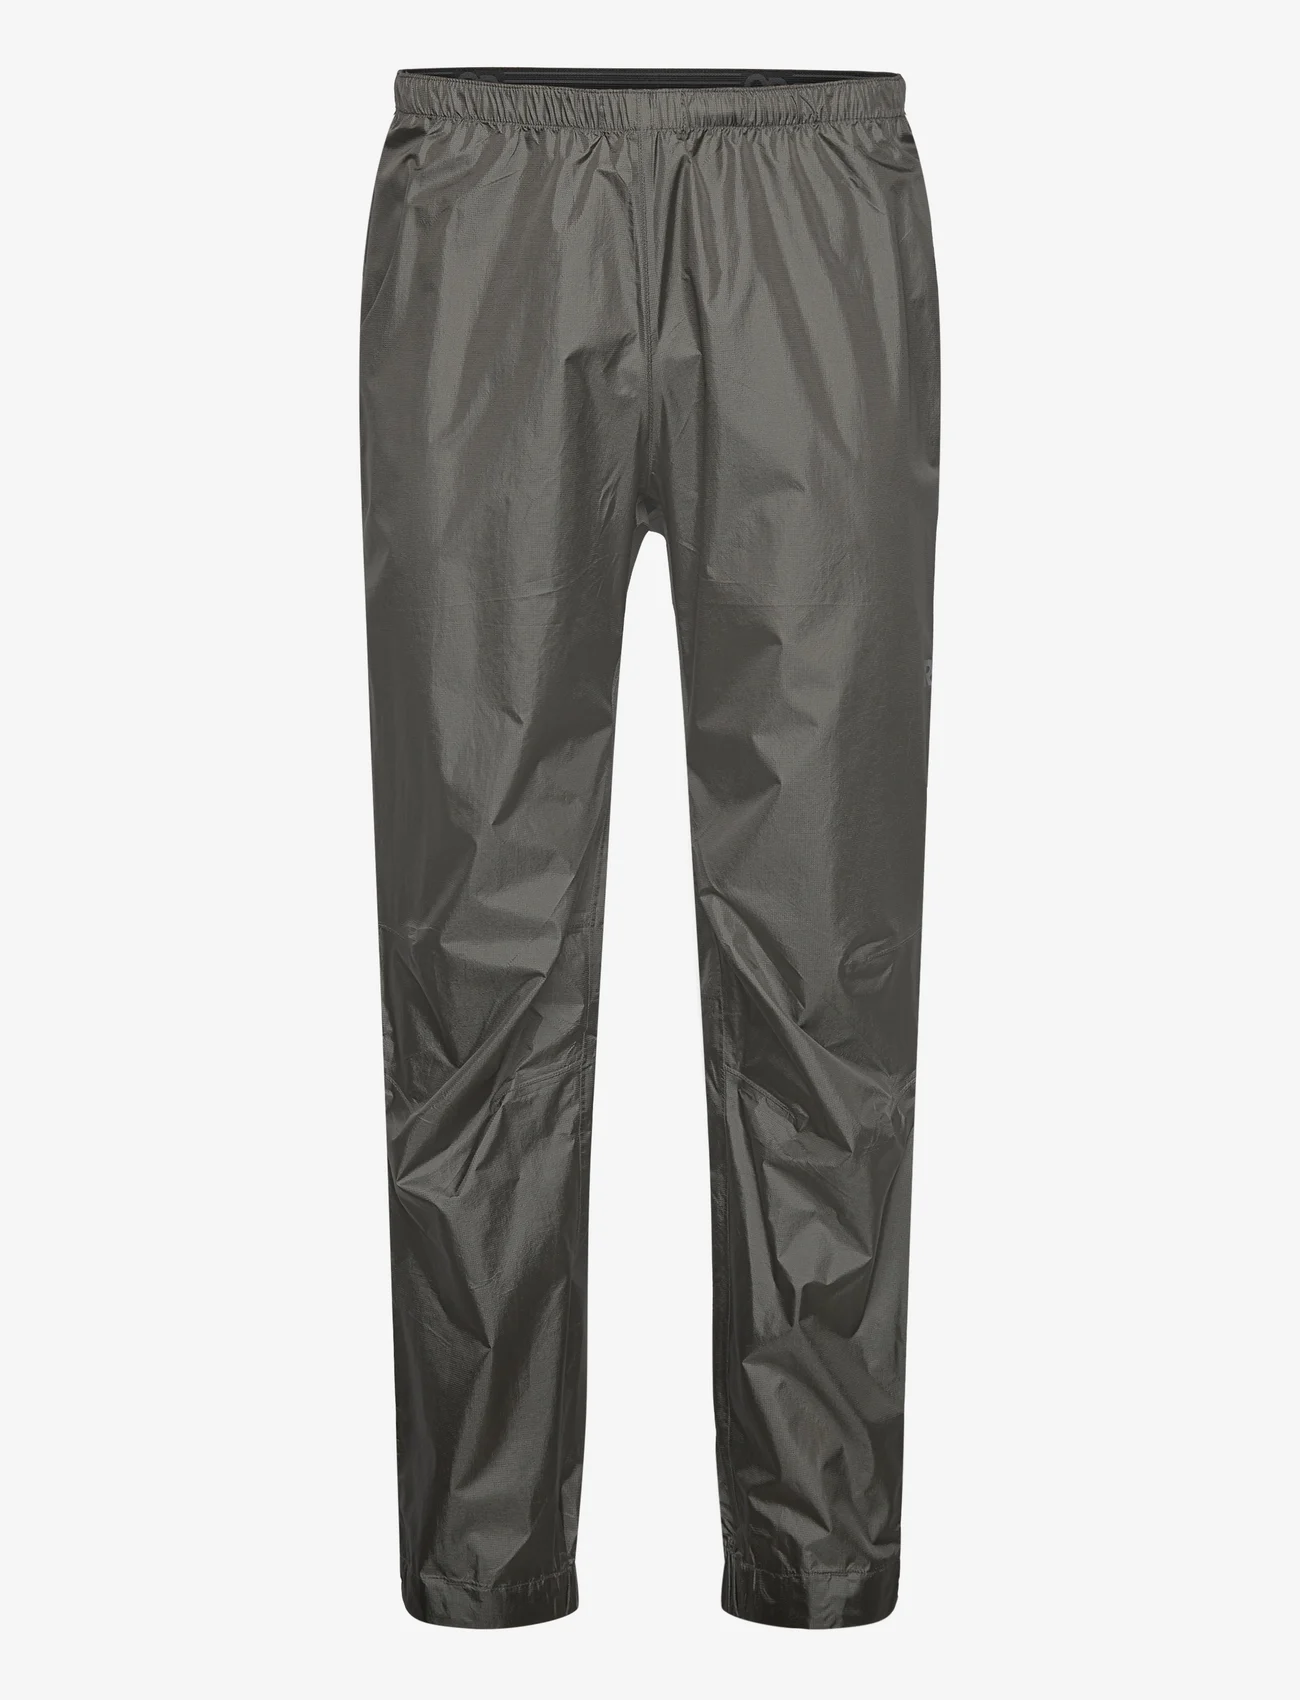 Outdoor Research - M HELIUM RAIN PNT - pantalon de randonnée - pewter - 0